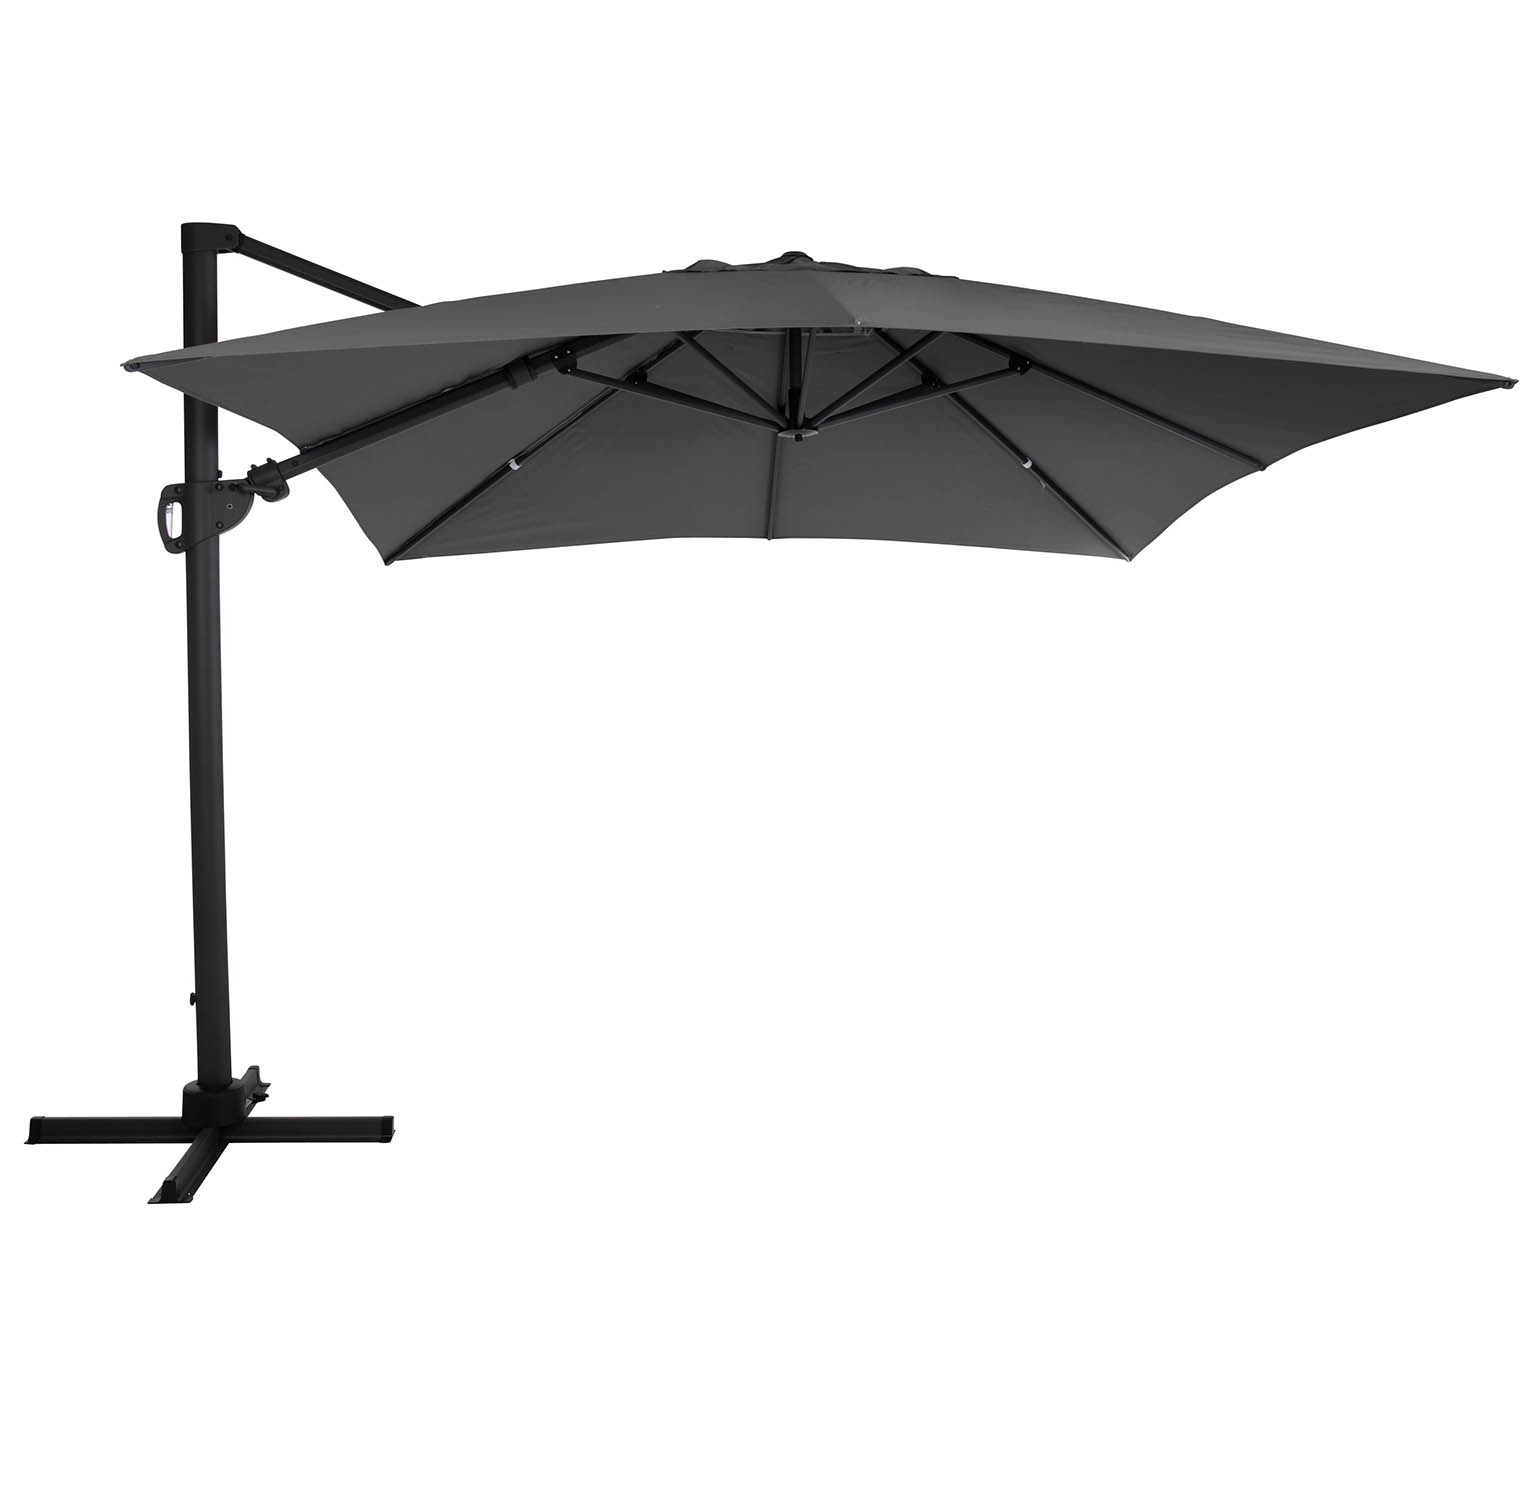 Brafab Varallo frihängande parasoll 300x300 cm antracit/grå